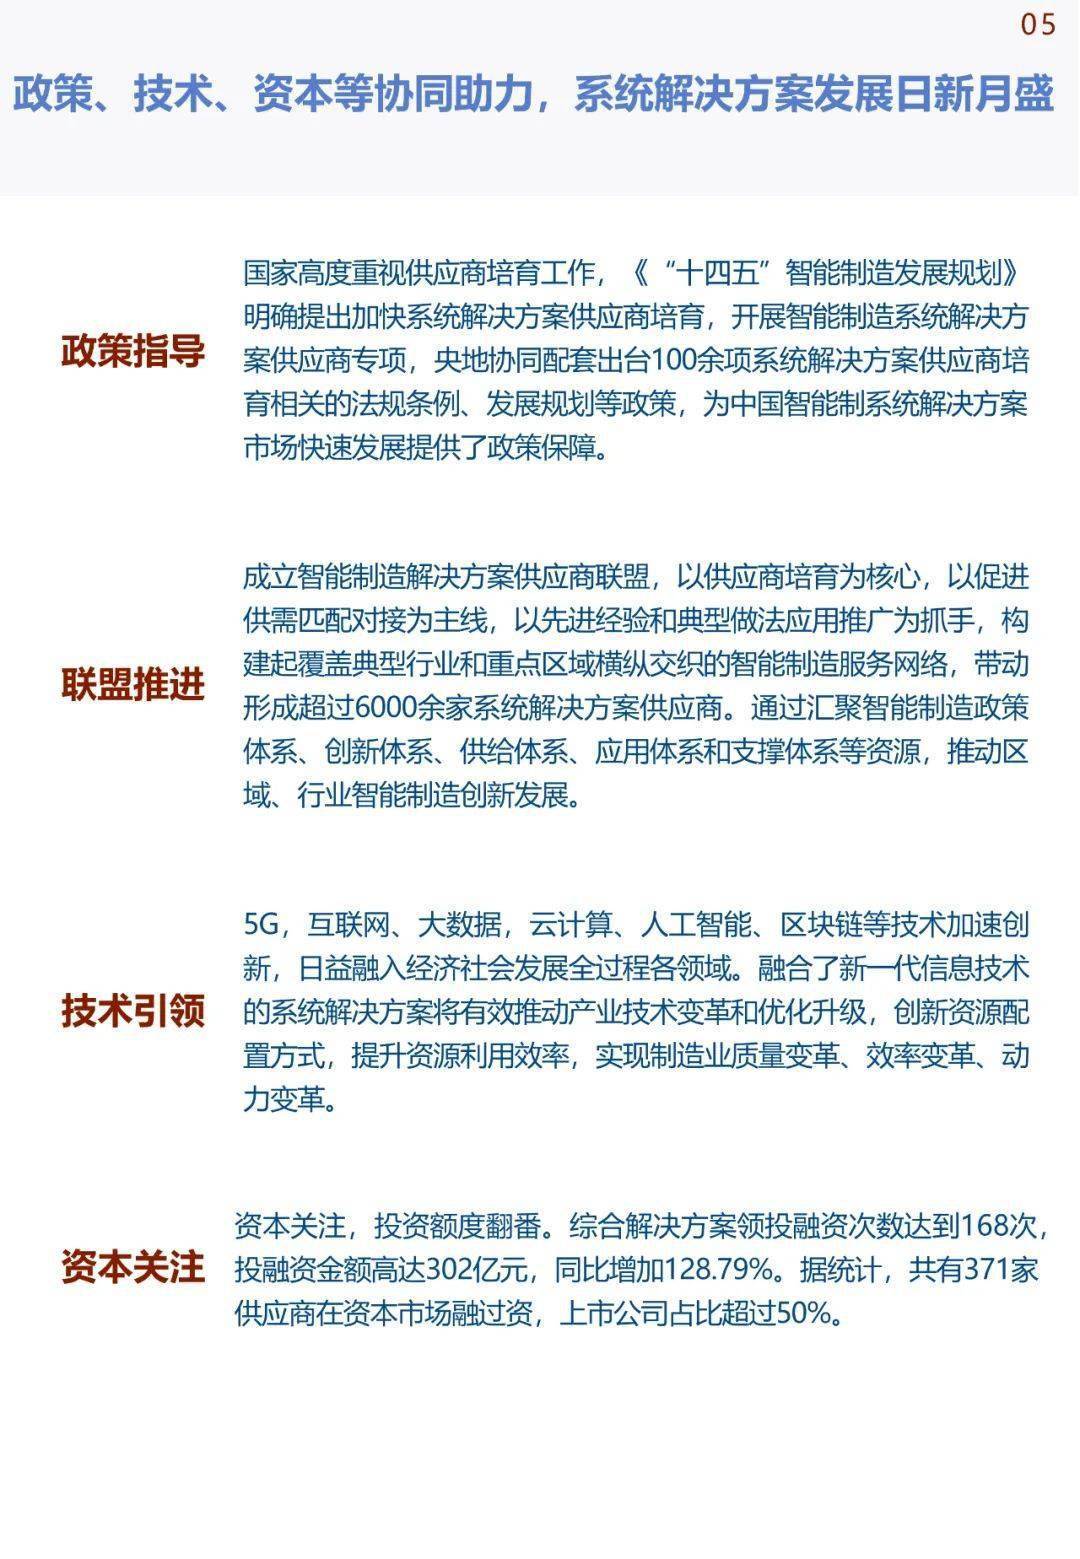 中国手机华为系统下载
:《中国智能制造发展研究报告：系统解决方案》发布(可下载)-第9张图片-太平洋在线下载